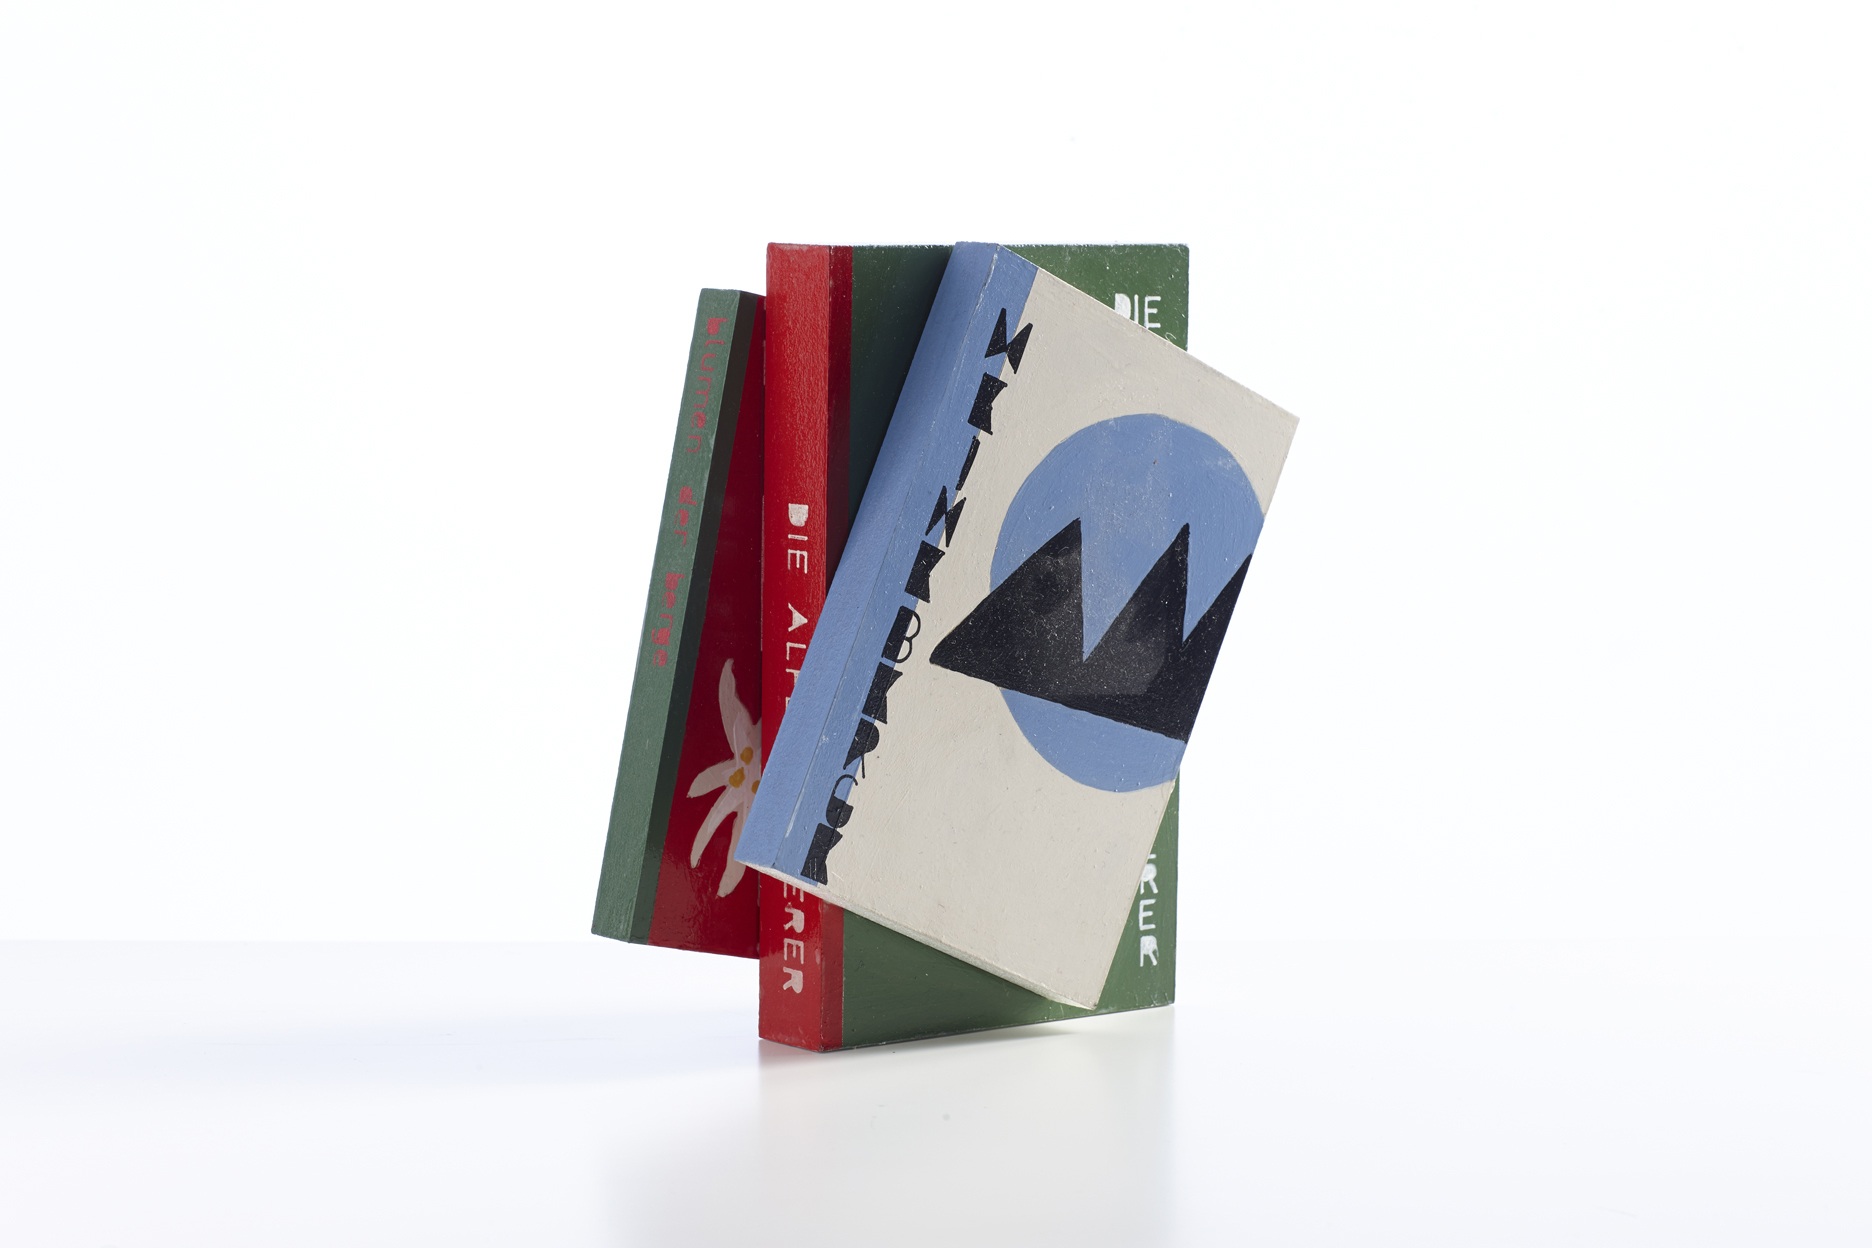 Emi Ligabue, Libri finti, 2013, tempera su legno, dimensioni variabili